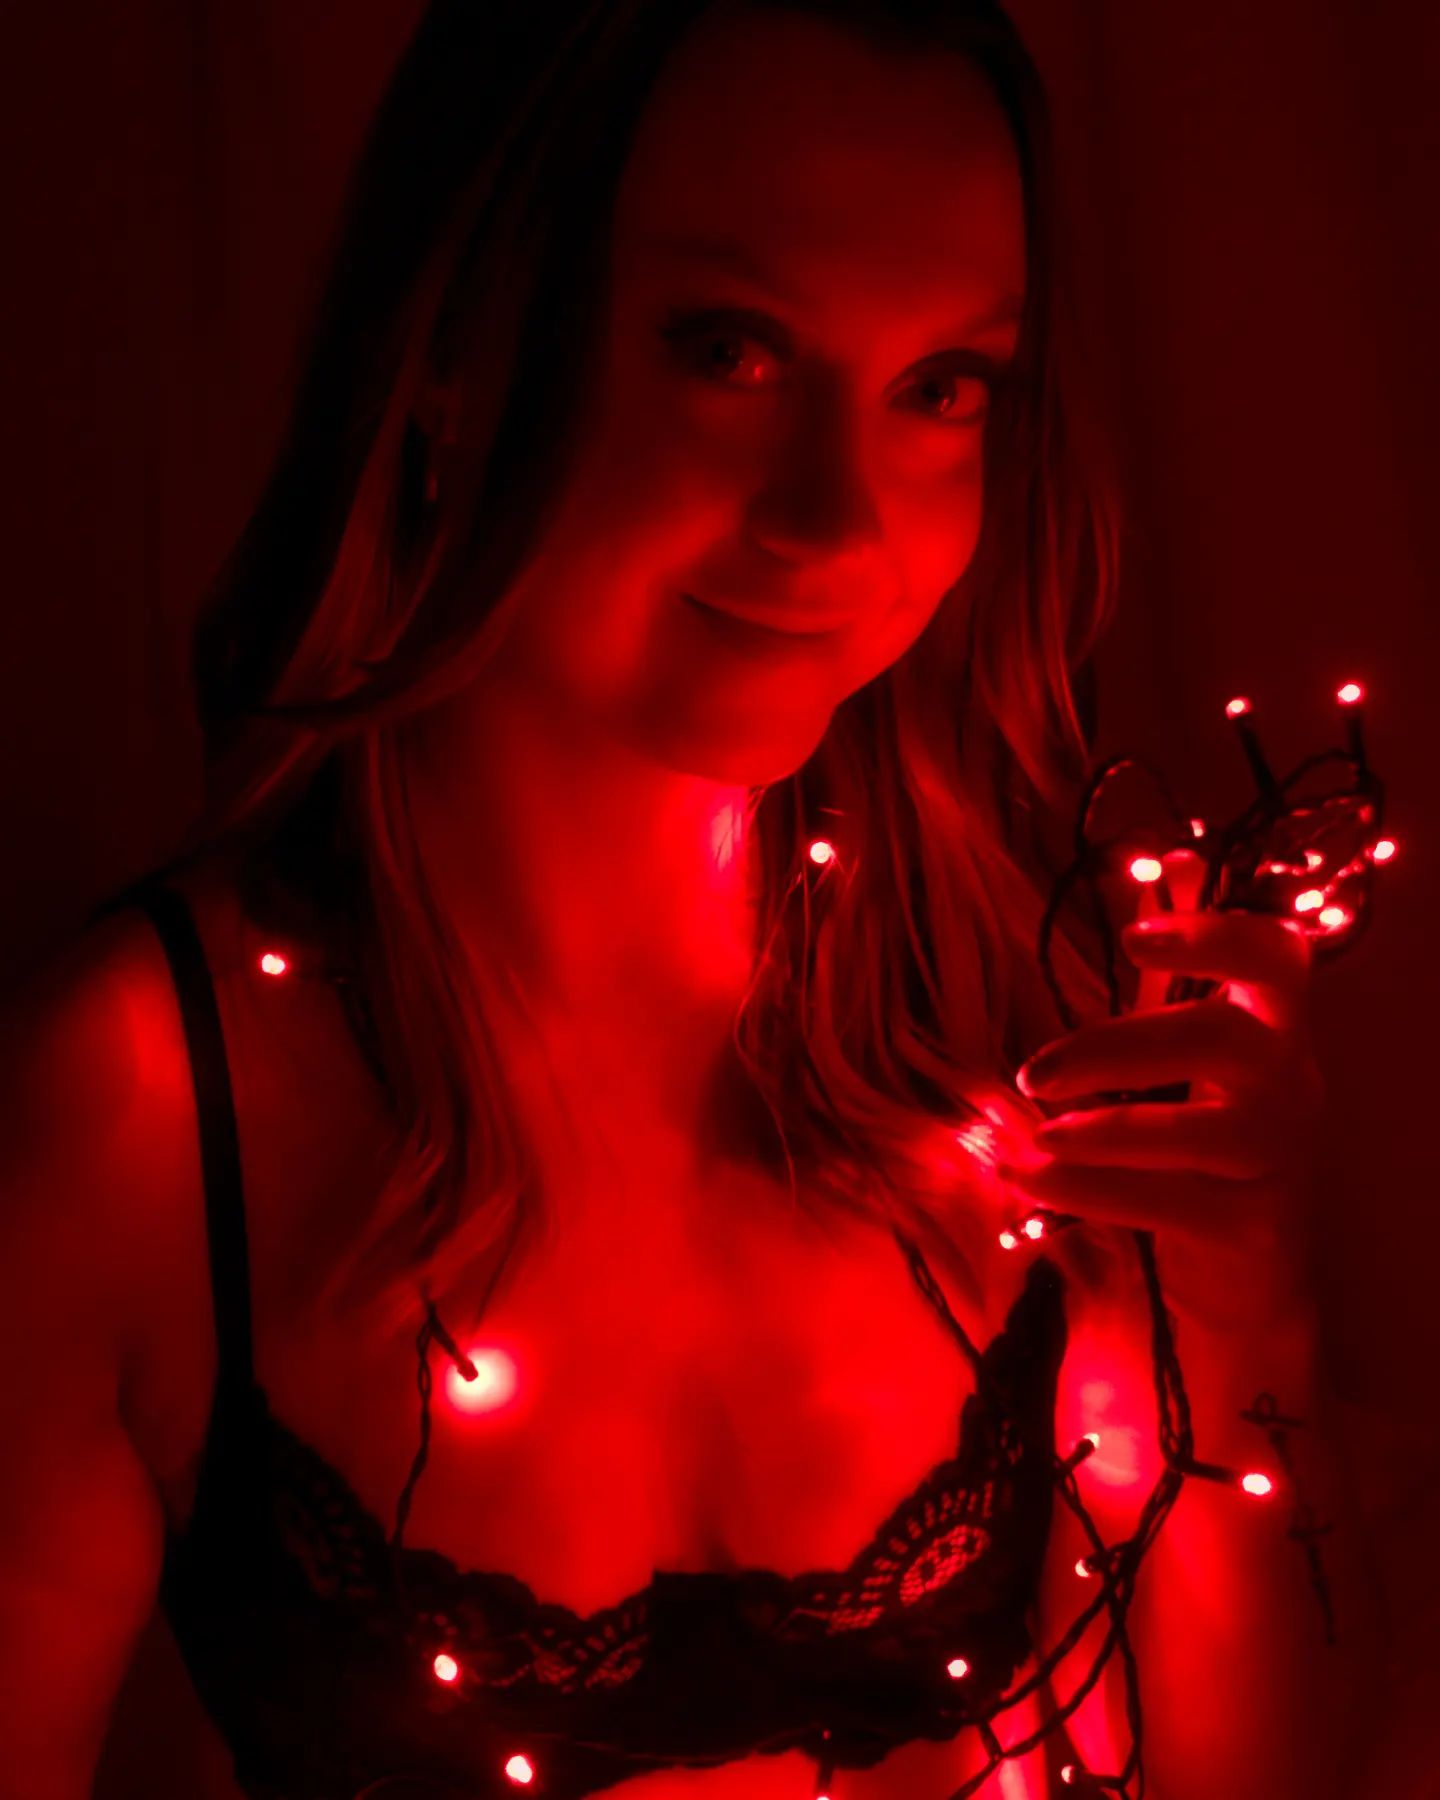 Hyviä pyhiä, olitpa sitten töissä tai vapaalla🥰 

Itse oon ekaa kertaa joulun töissä (tuplapalkat ja köyhyys made me do it) ja pyhien jälkeen pääsee lomalle❤️ 

#redlights #photoshoot #lingerie #joulu

@00f.closeup.agent